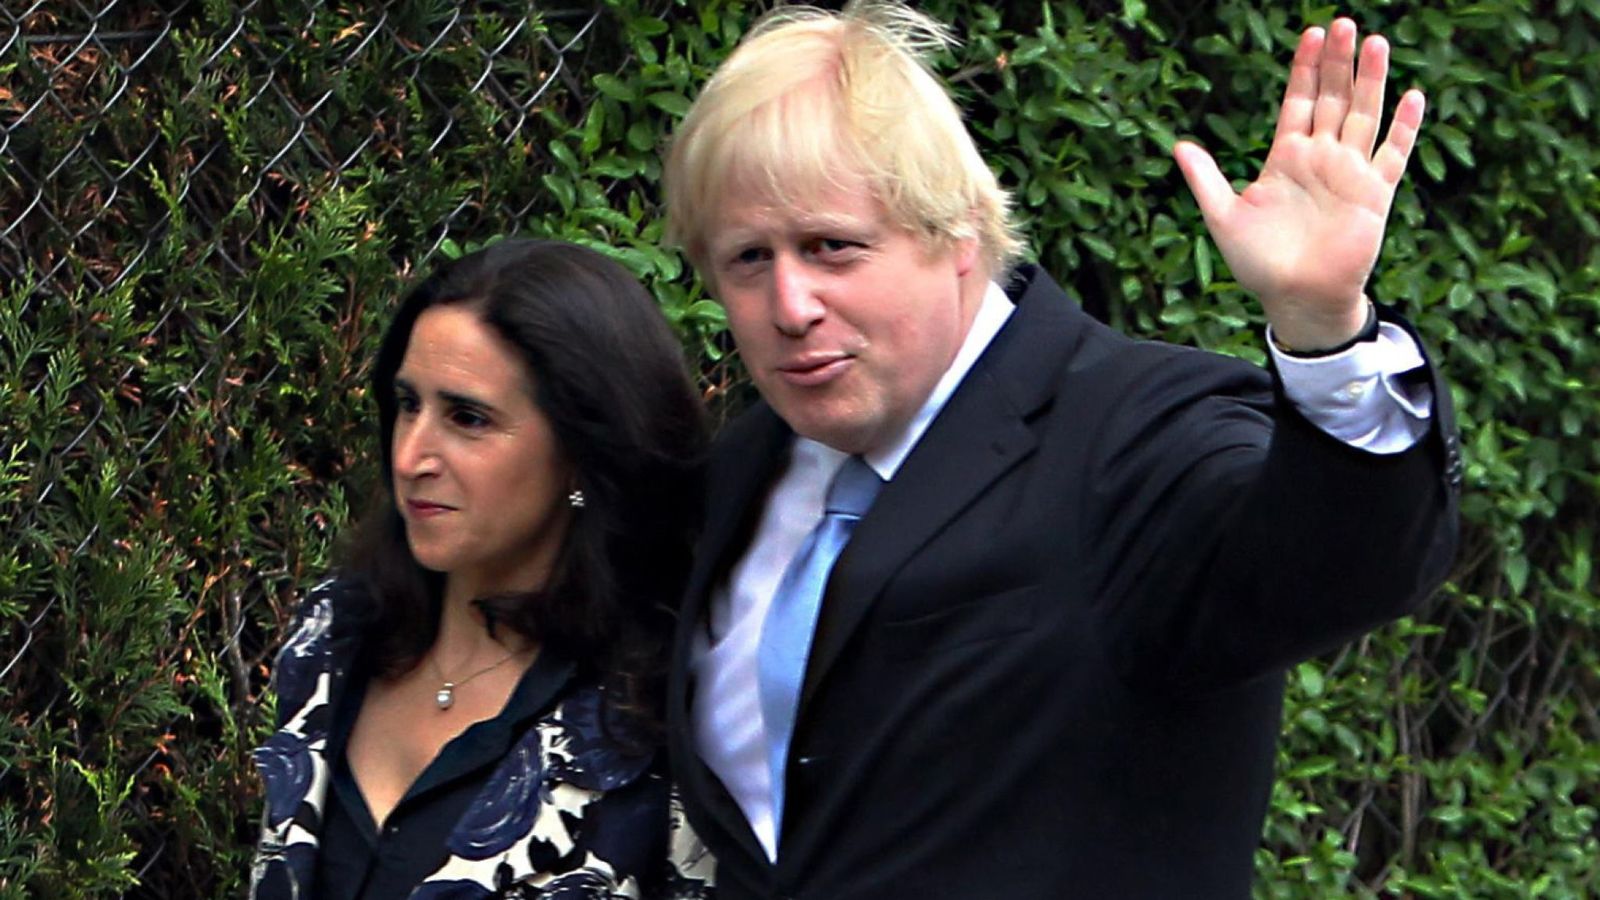 Boris Johnson i jep fund martesës 25-vjeçare, ish-gruaja përfiton 4 milion paund nga pasuria e tij